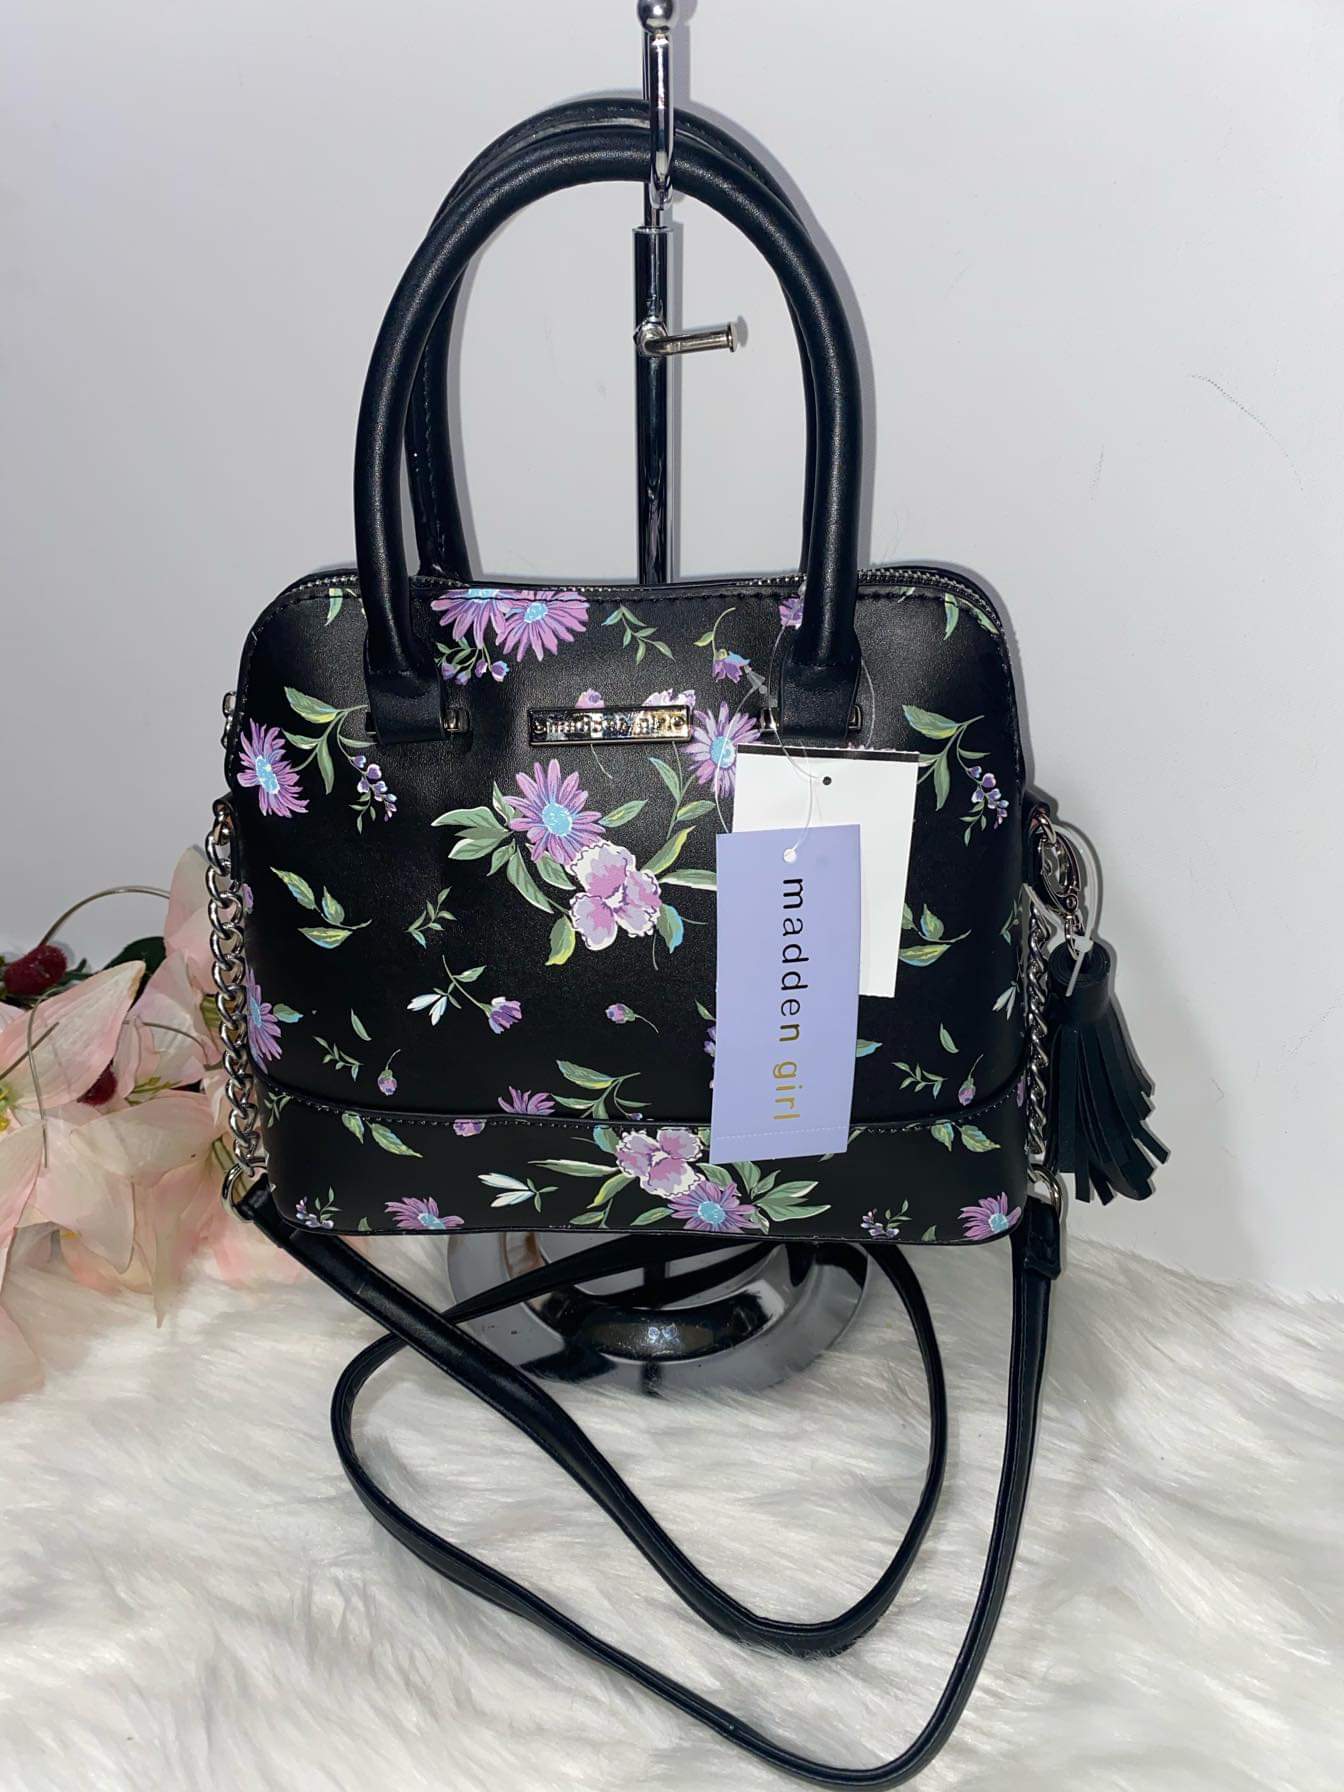 Madden Girl handbag Purse bag crossbody | Purses crossbody, Girls handbags,  Purses and handbags